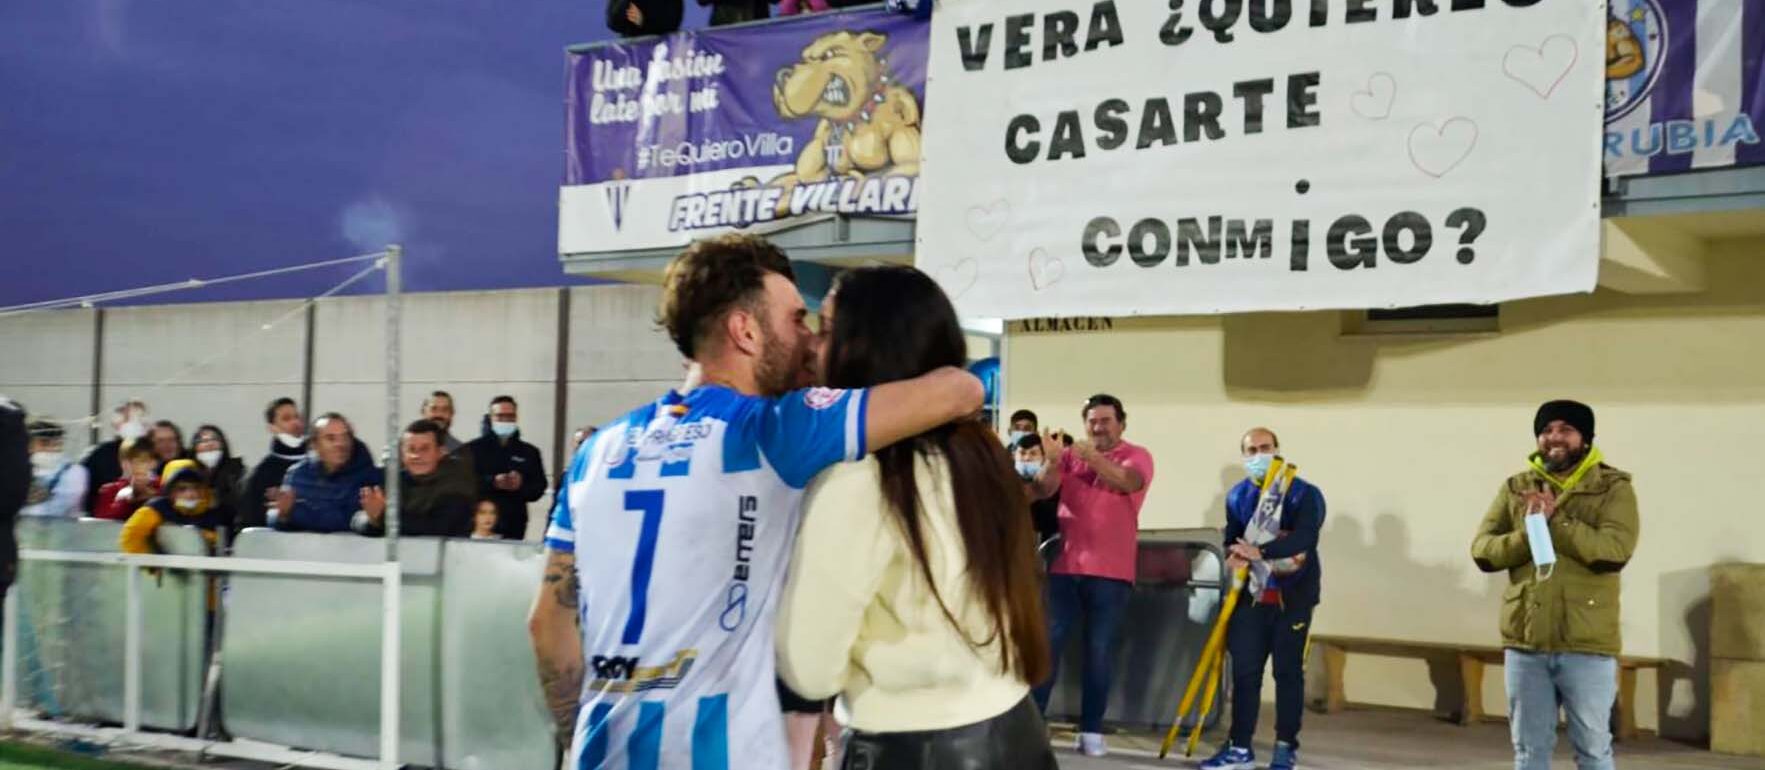 La romántica imagen que nos dejó el derbi entre Villarrubia y Manchego. Foto: Alberto Beamud/EÑE Deporte TVi.